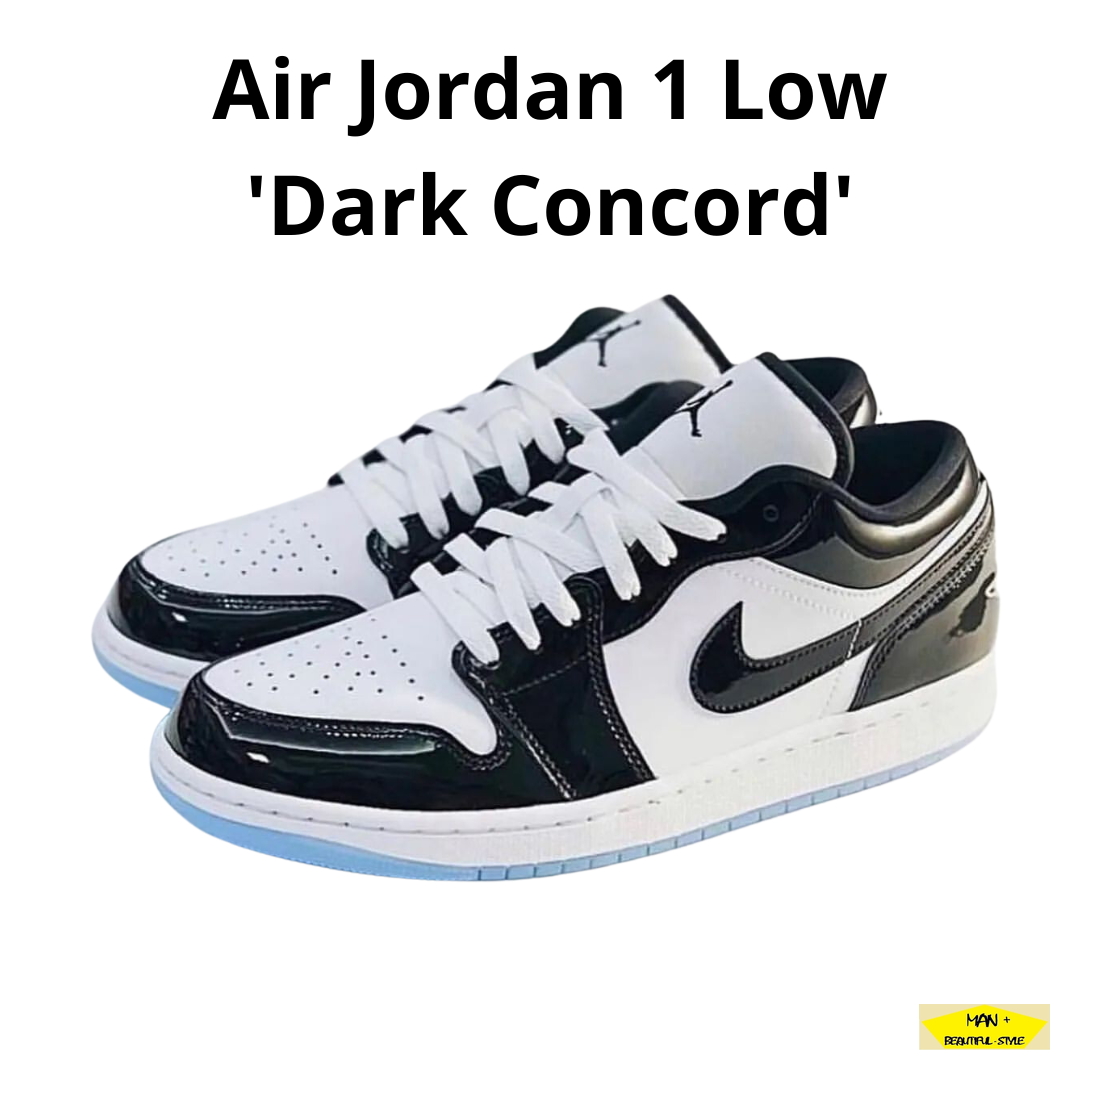 Giày Jordan, Air Jordan 1 Low Dark Concord, giày thể thao nam nữ Jordan màu đen trắng